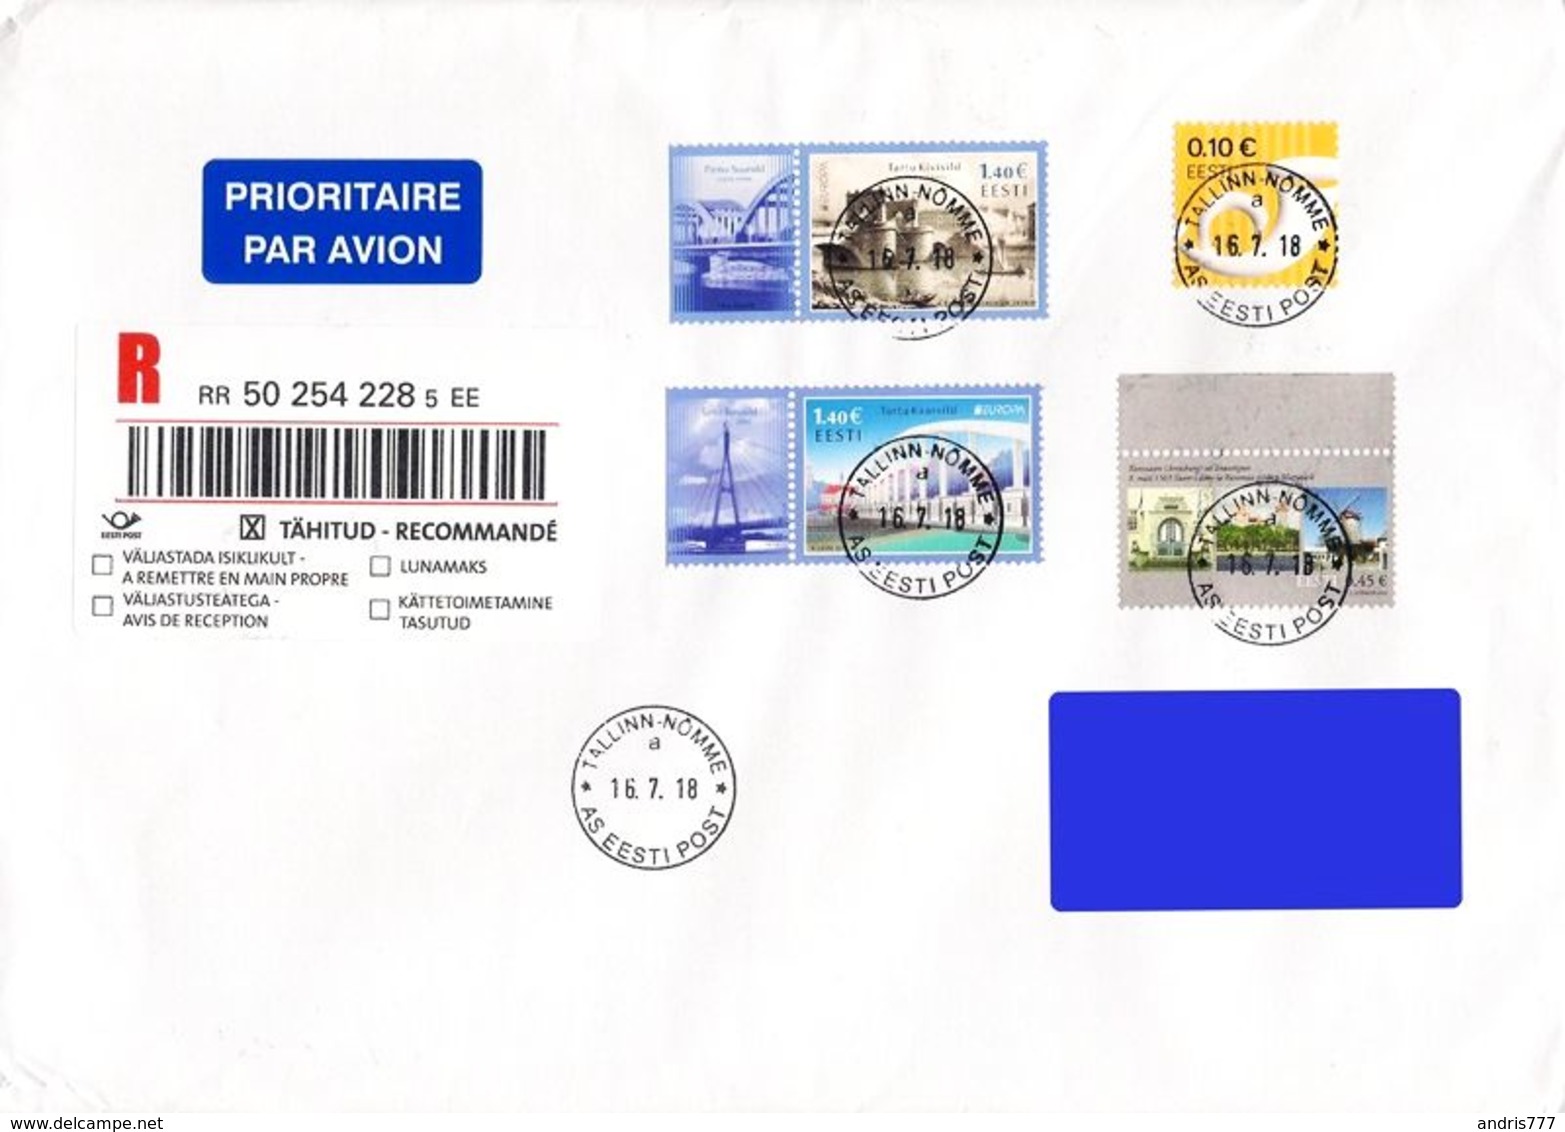 Estonia Estland Estonie 2018 (09) Europe - Bridges - Used Stamps On Addressed Cover - Estonia